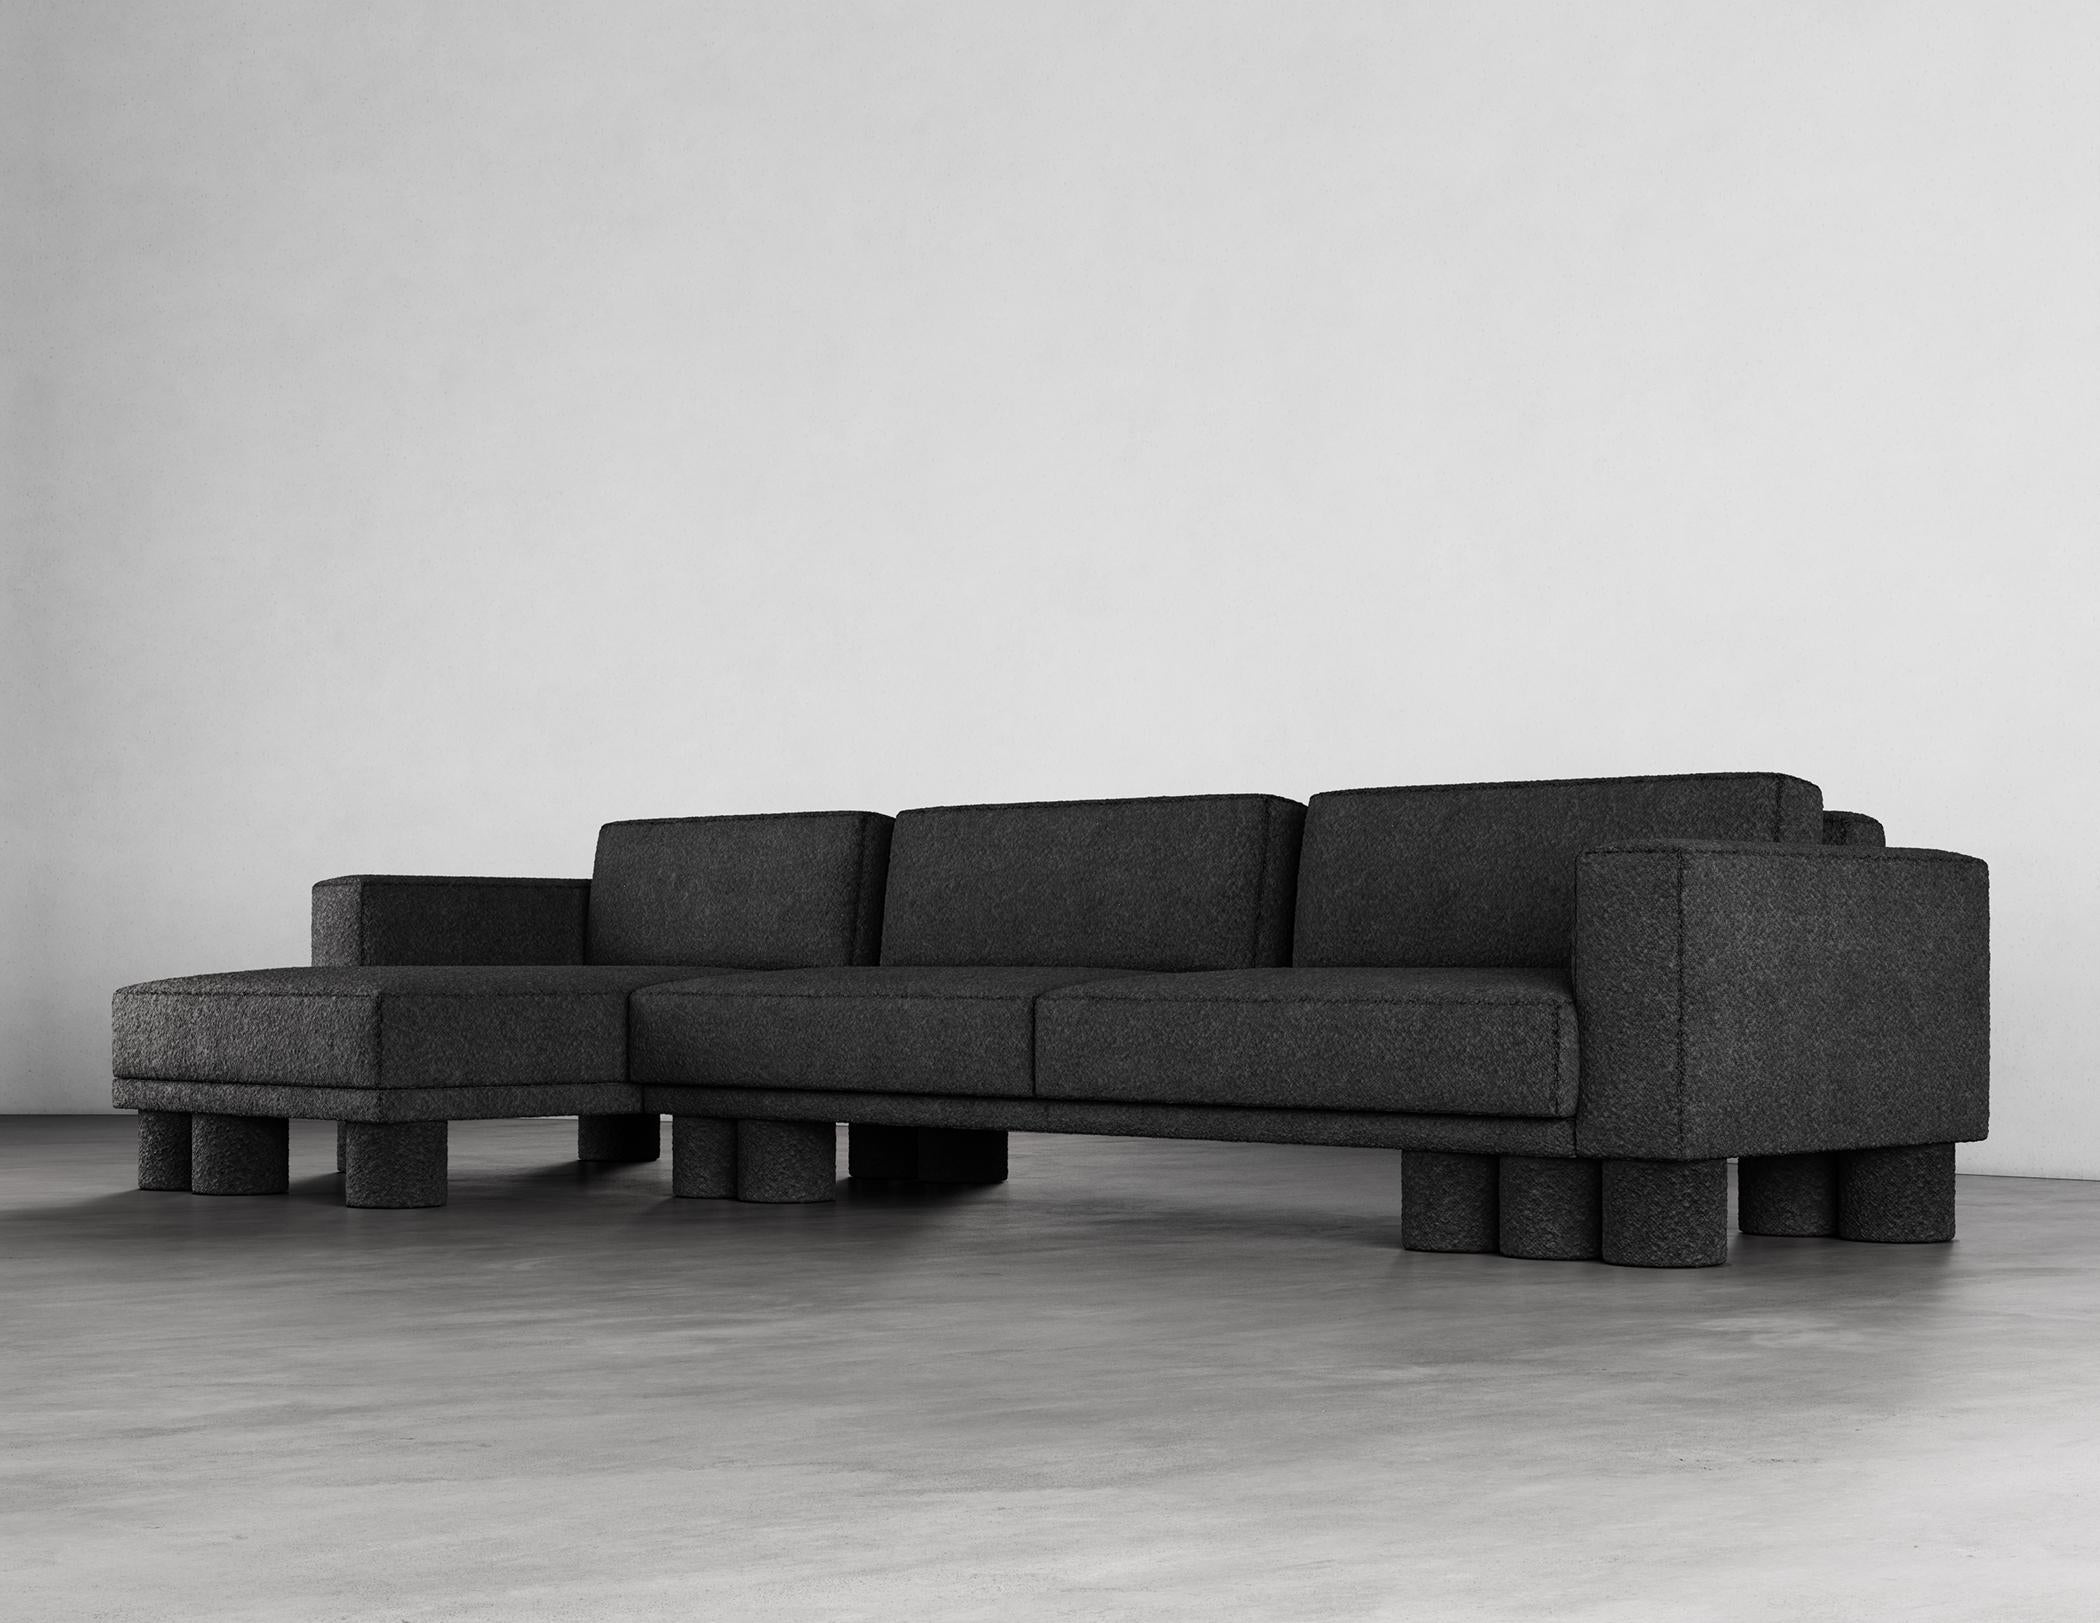 Das Pillar Sectional Sofa ist ein atemberaubendes Möbelstück mit einem einzigartigen und fesselnden Design. Es zeichnet sich durch mehrschichtige, asymmetrische Designelemente aus, die ein Gefühl von Raffinesse und Schlichtheit vermitteln. Die